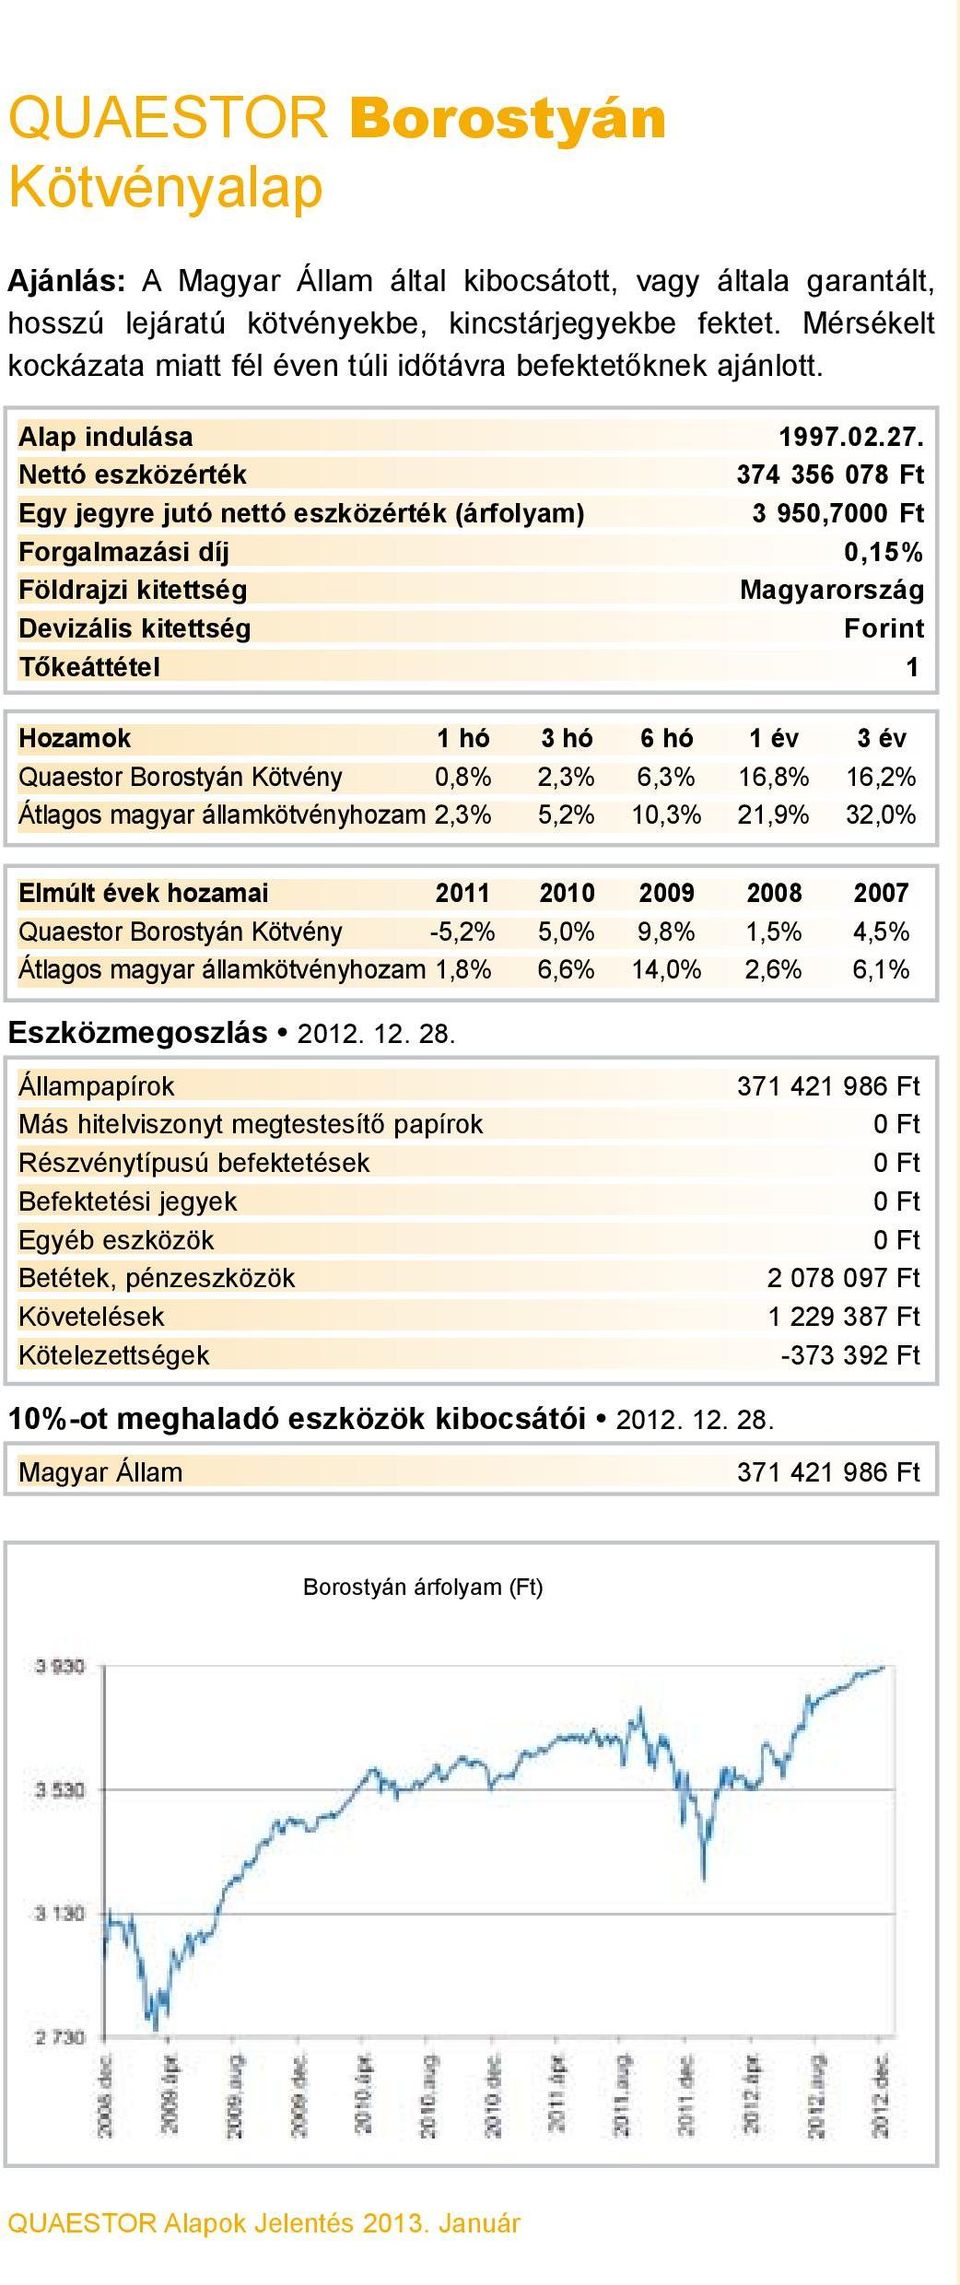 374 356 078 Ft 3 950,700 Forgalmazási díj 0,15% Magyarország Forint Quaestor Borostyán Kötvény 0,8% 2,3% 6,3% 16,8% 16,2% Átlagos magyar államkötvényhozam